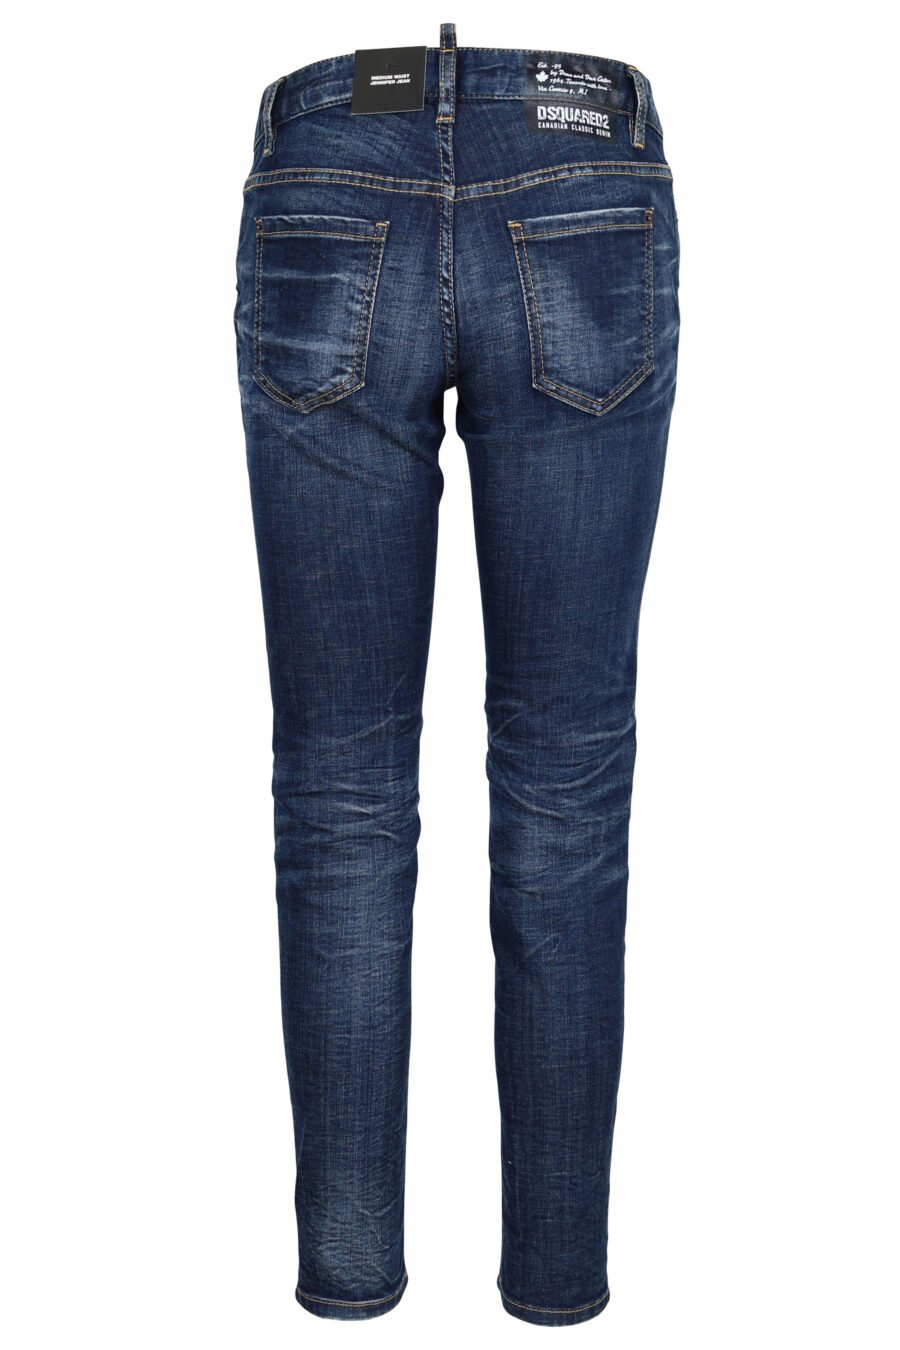 Pantalon en denim bleu "Jennifer Jean", semi-frisé - 8054148309732 2